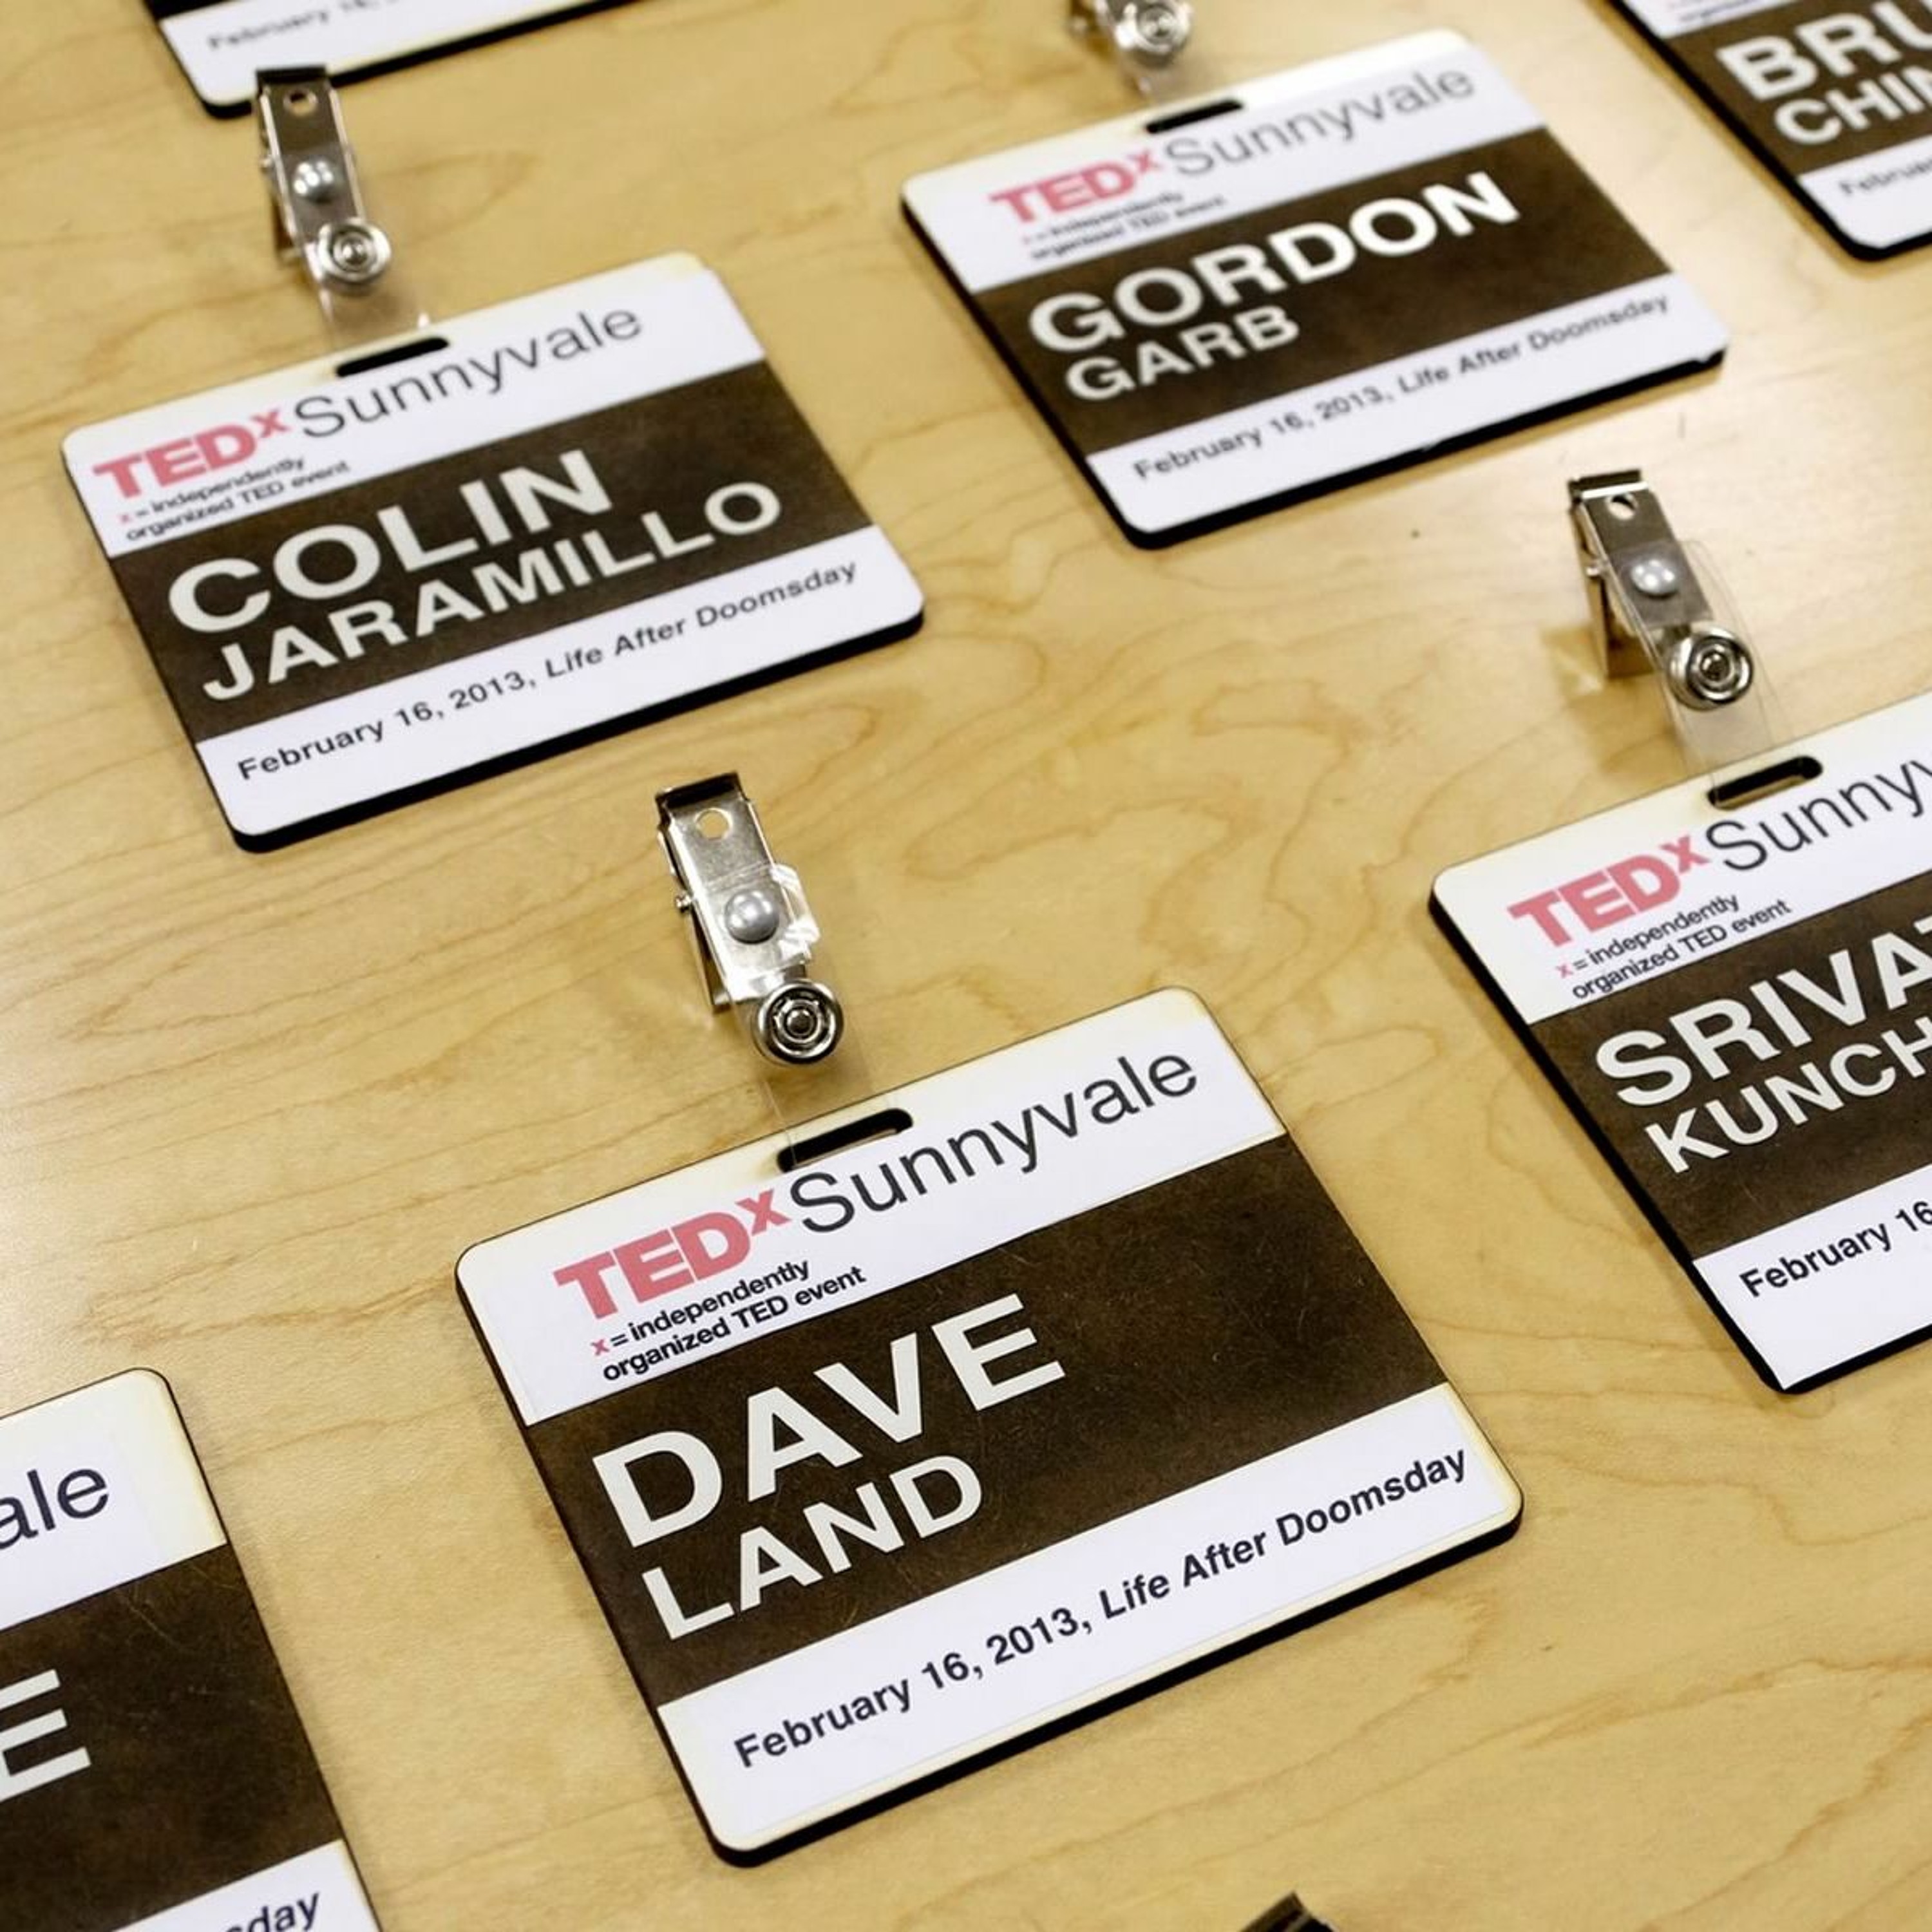 TEDxSunnyvale - Gordon Garb